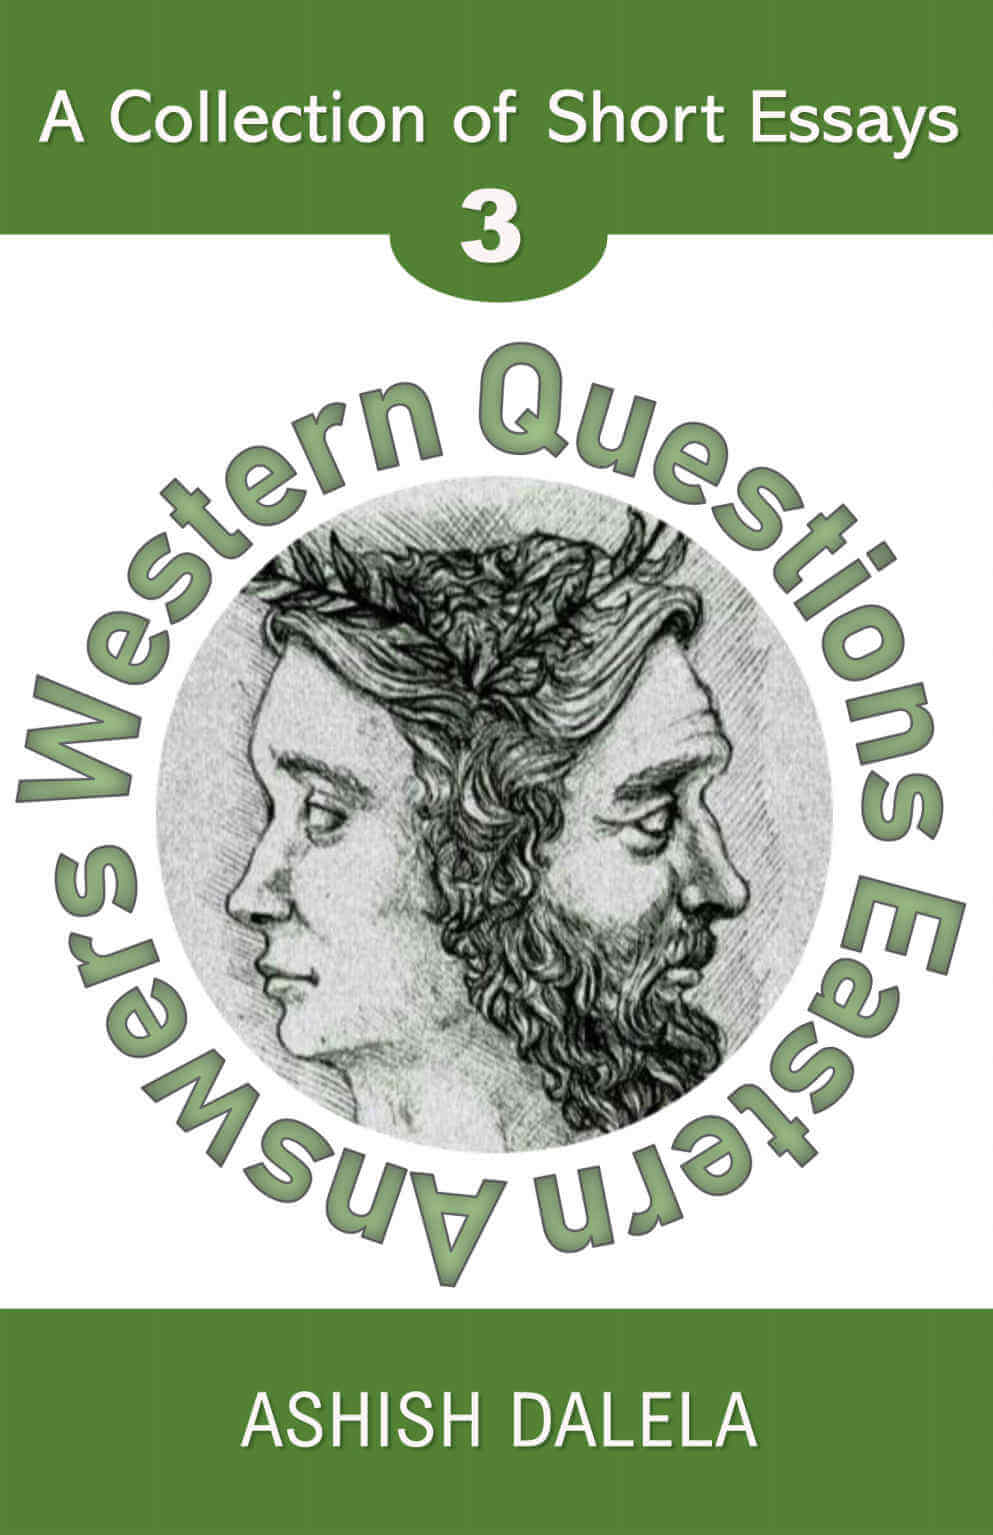 Westliche Fragen, östliche Antworten: Eine Sammlung kurzer Essays - Band 3